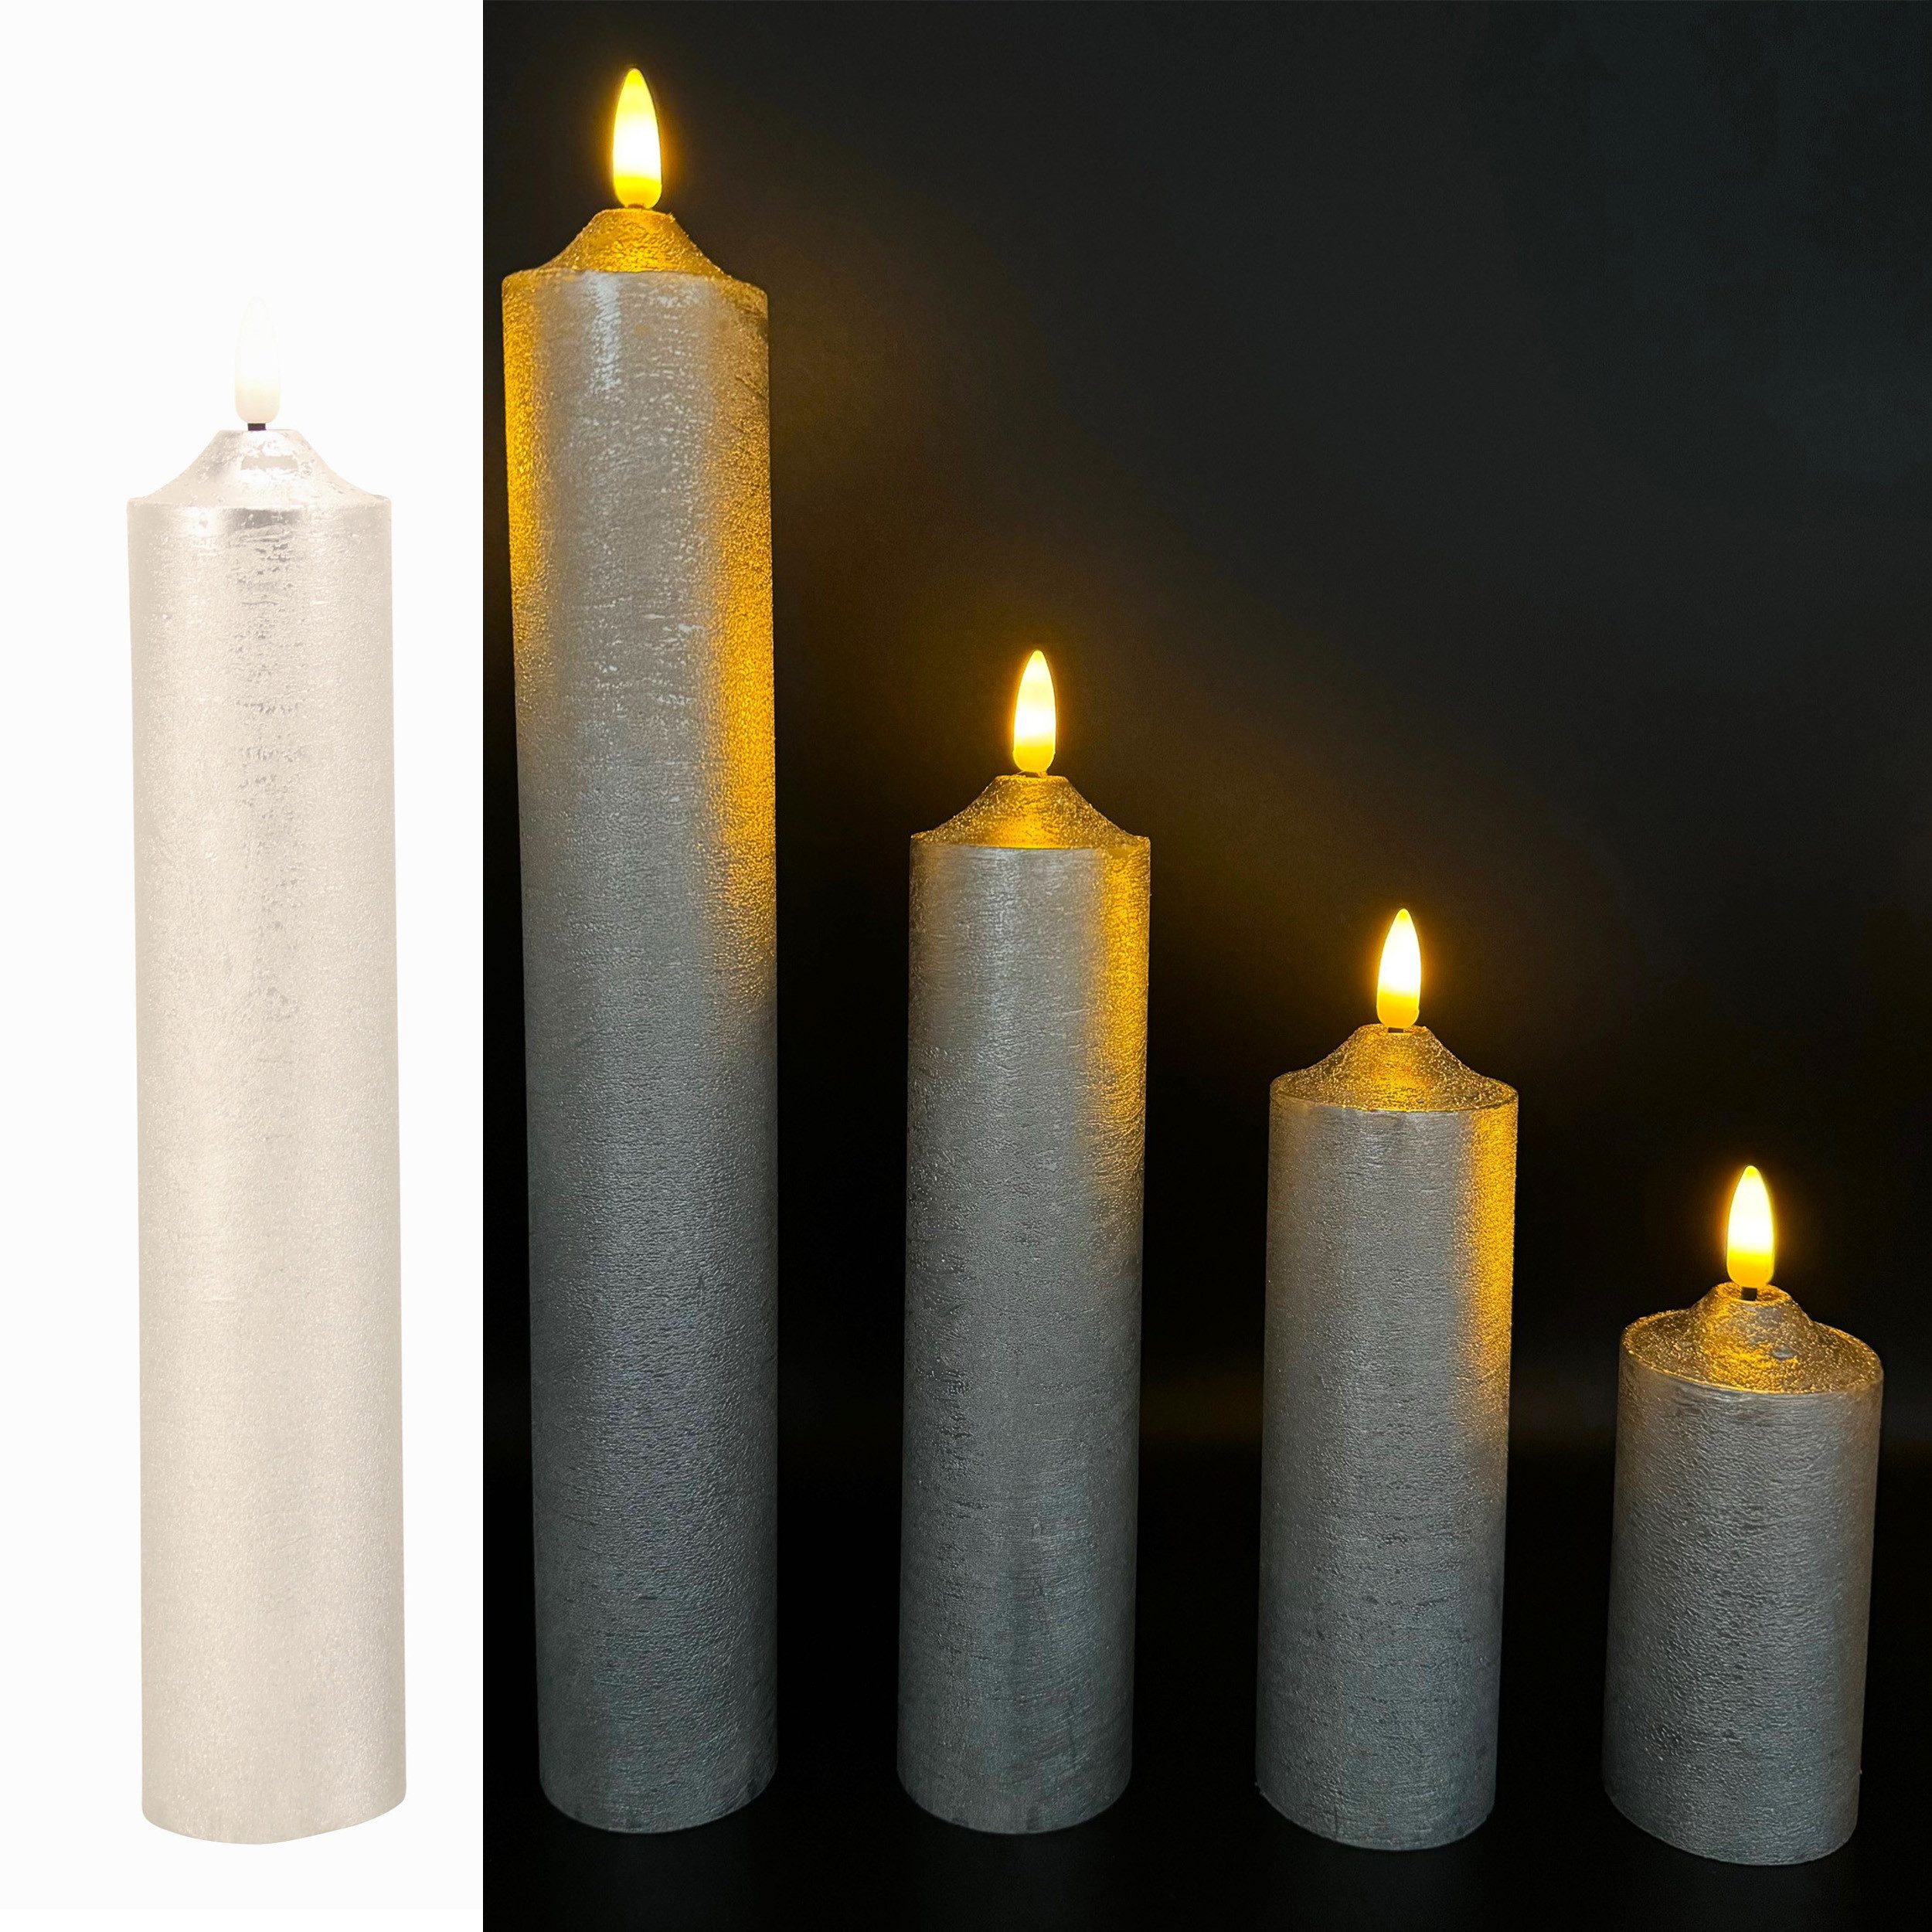 Online-Fuchs LED-Kerze 5 LED Kerzen XL aus Echtwachs mit realistischer Flamme (Metallic Farben in Rot, Silber, Weiß, Rosé, Taubenblau & Champagner -, bis 34 cm lang, 5 cm Durchmesser), NUR MIT 6 STUNDEN TIMER NUTZBAR